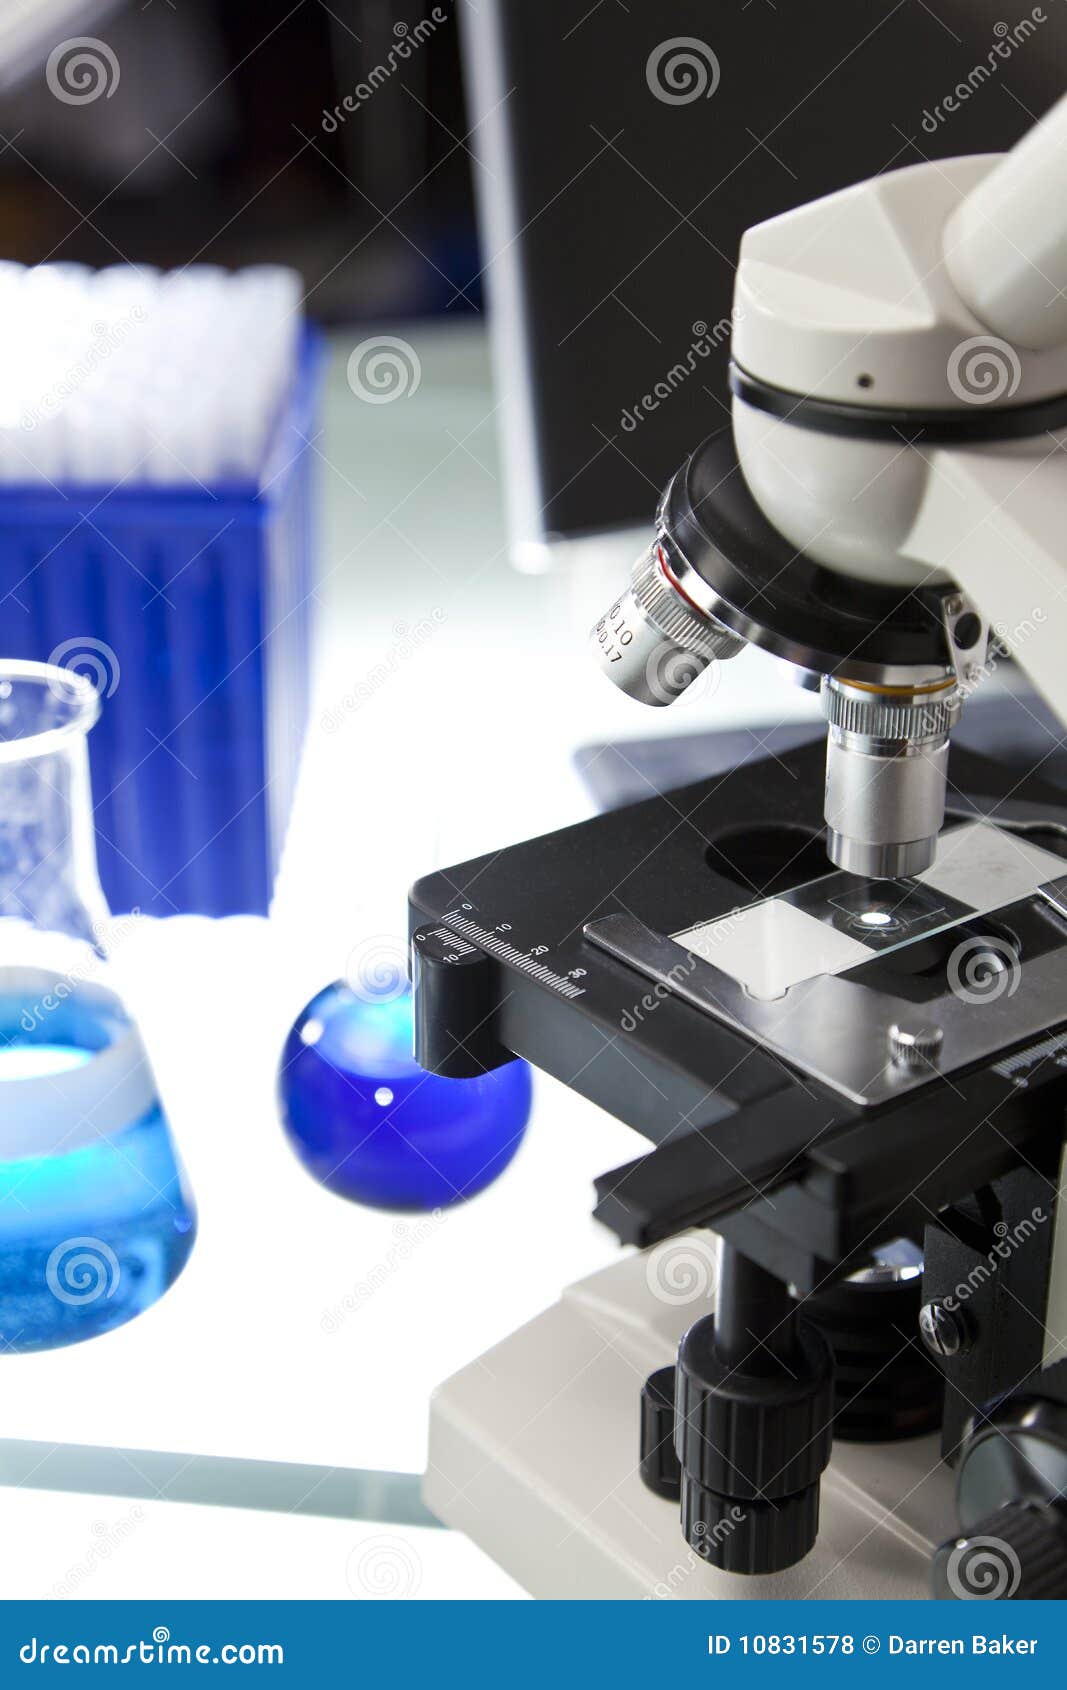 Microscope in a Scientific Research Laboratory Stock Photo - Image of ...